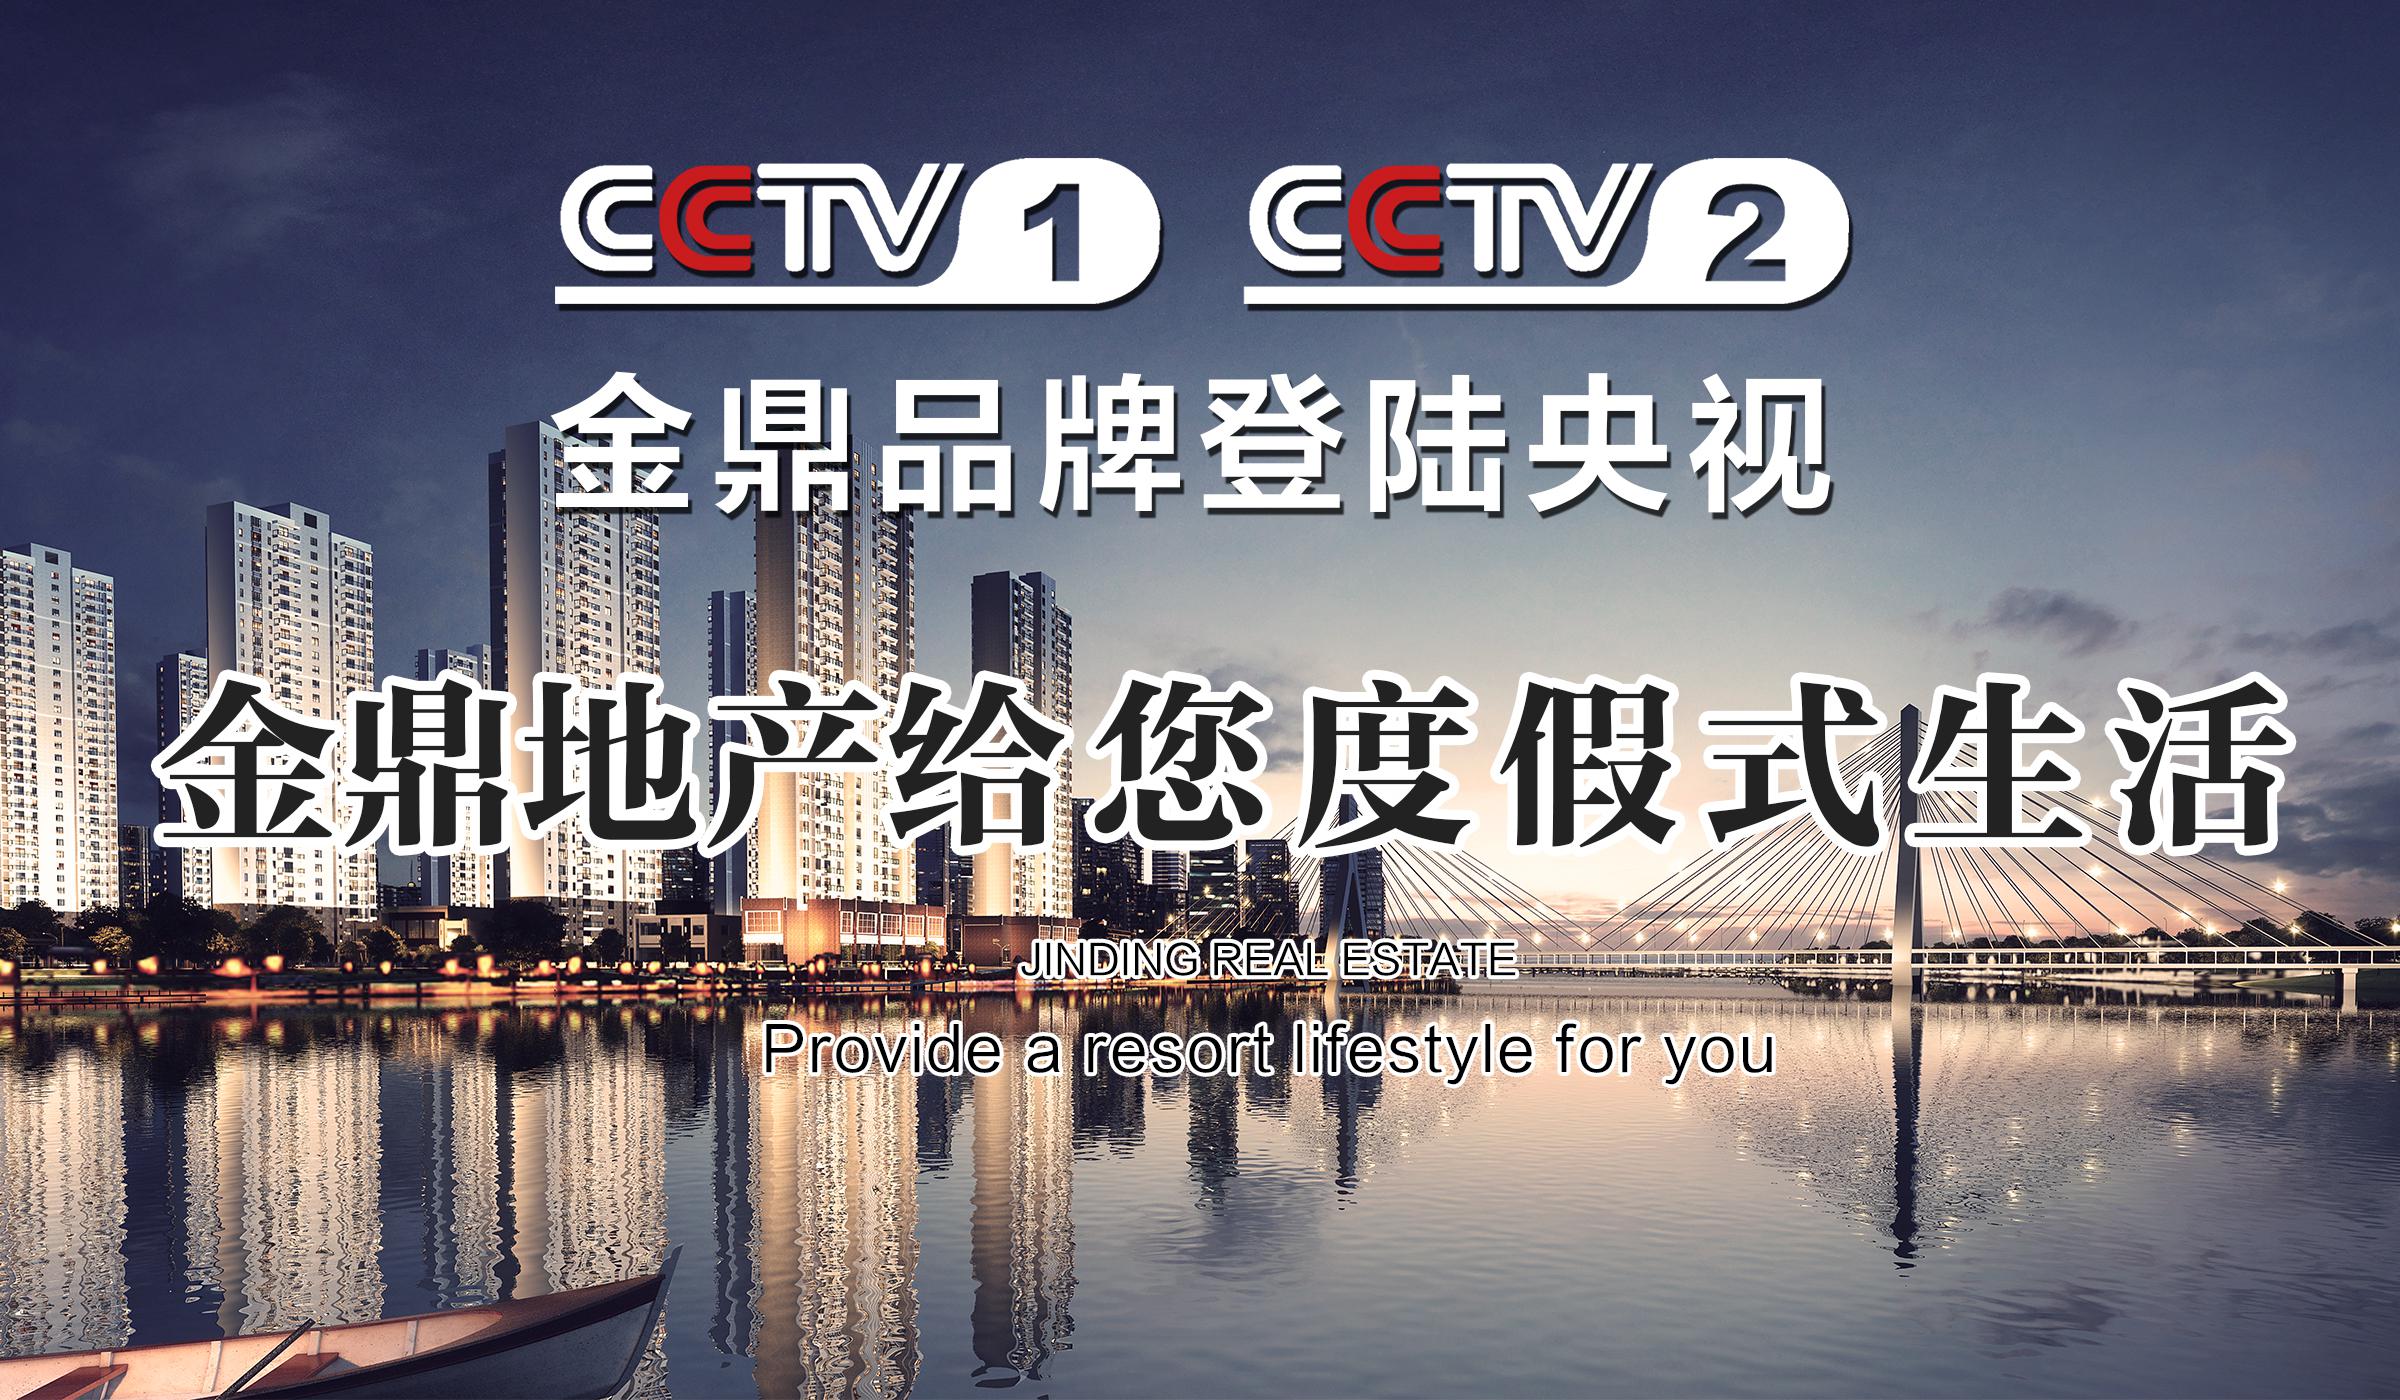 金鼎地产15s主题推广片登陆CCTV-2